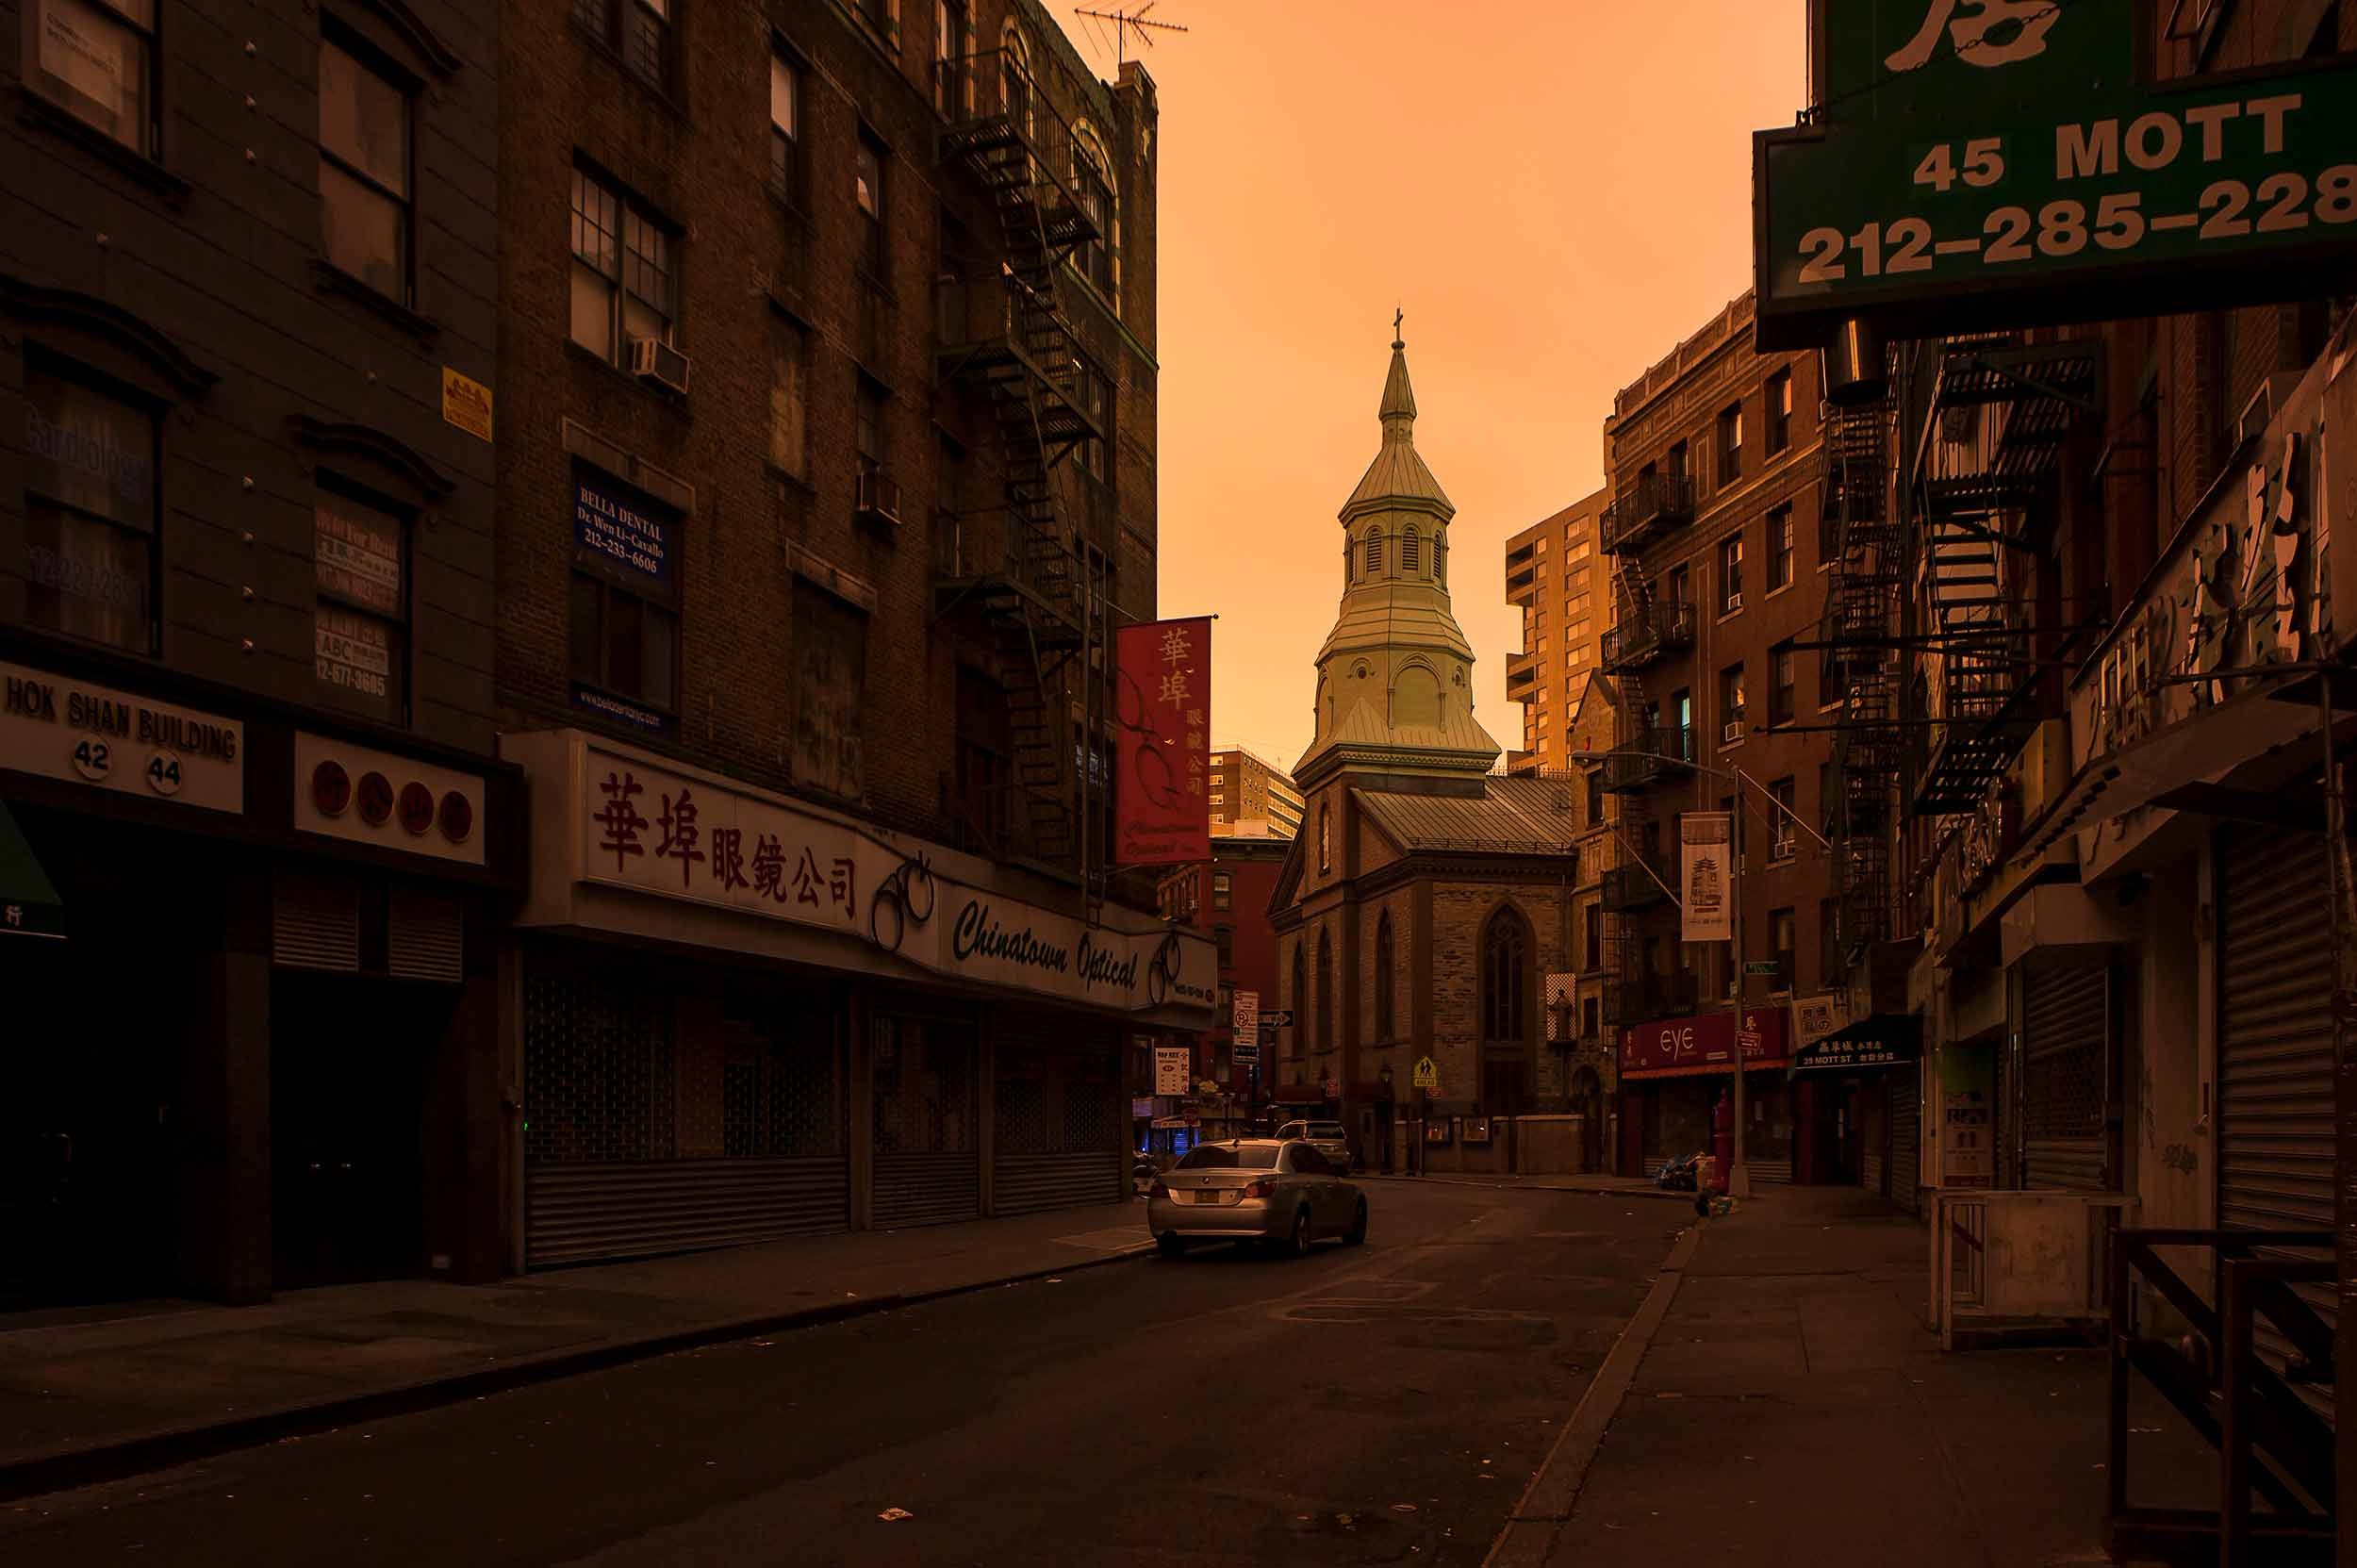 An 88-second exposure captures Mott Street near Pell Street